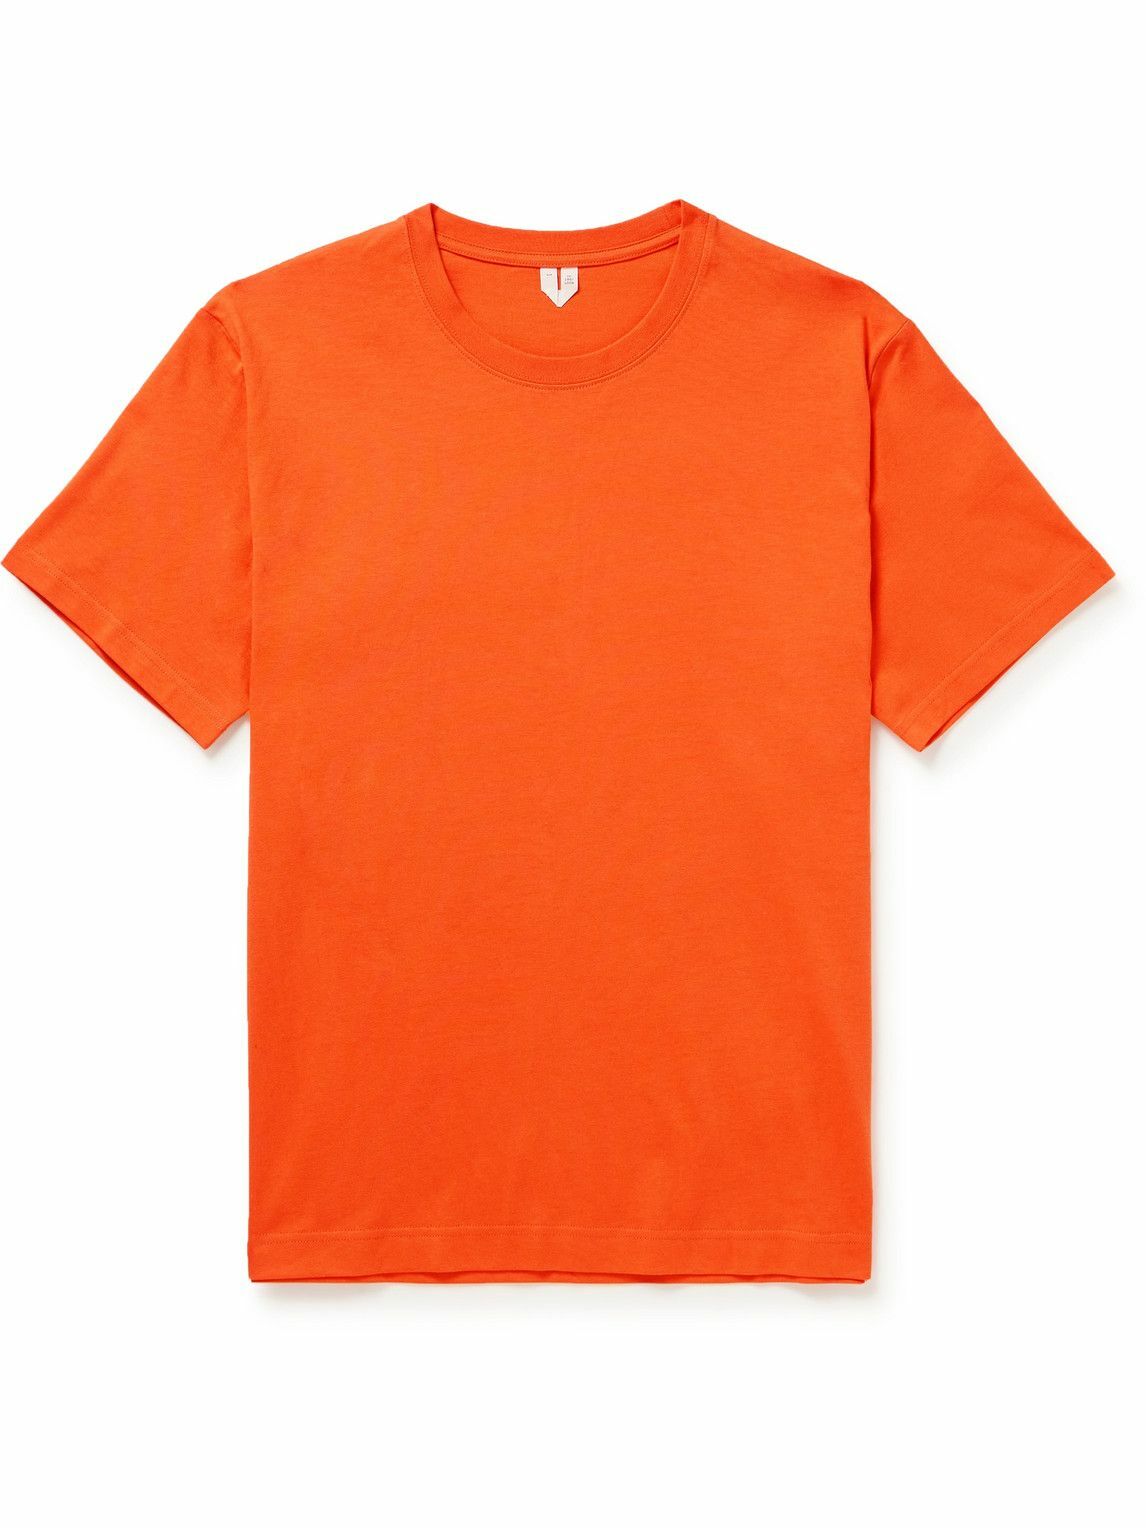 ARKET - Niko Organic Cotton-Jersey T-Shirt - Orange